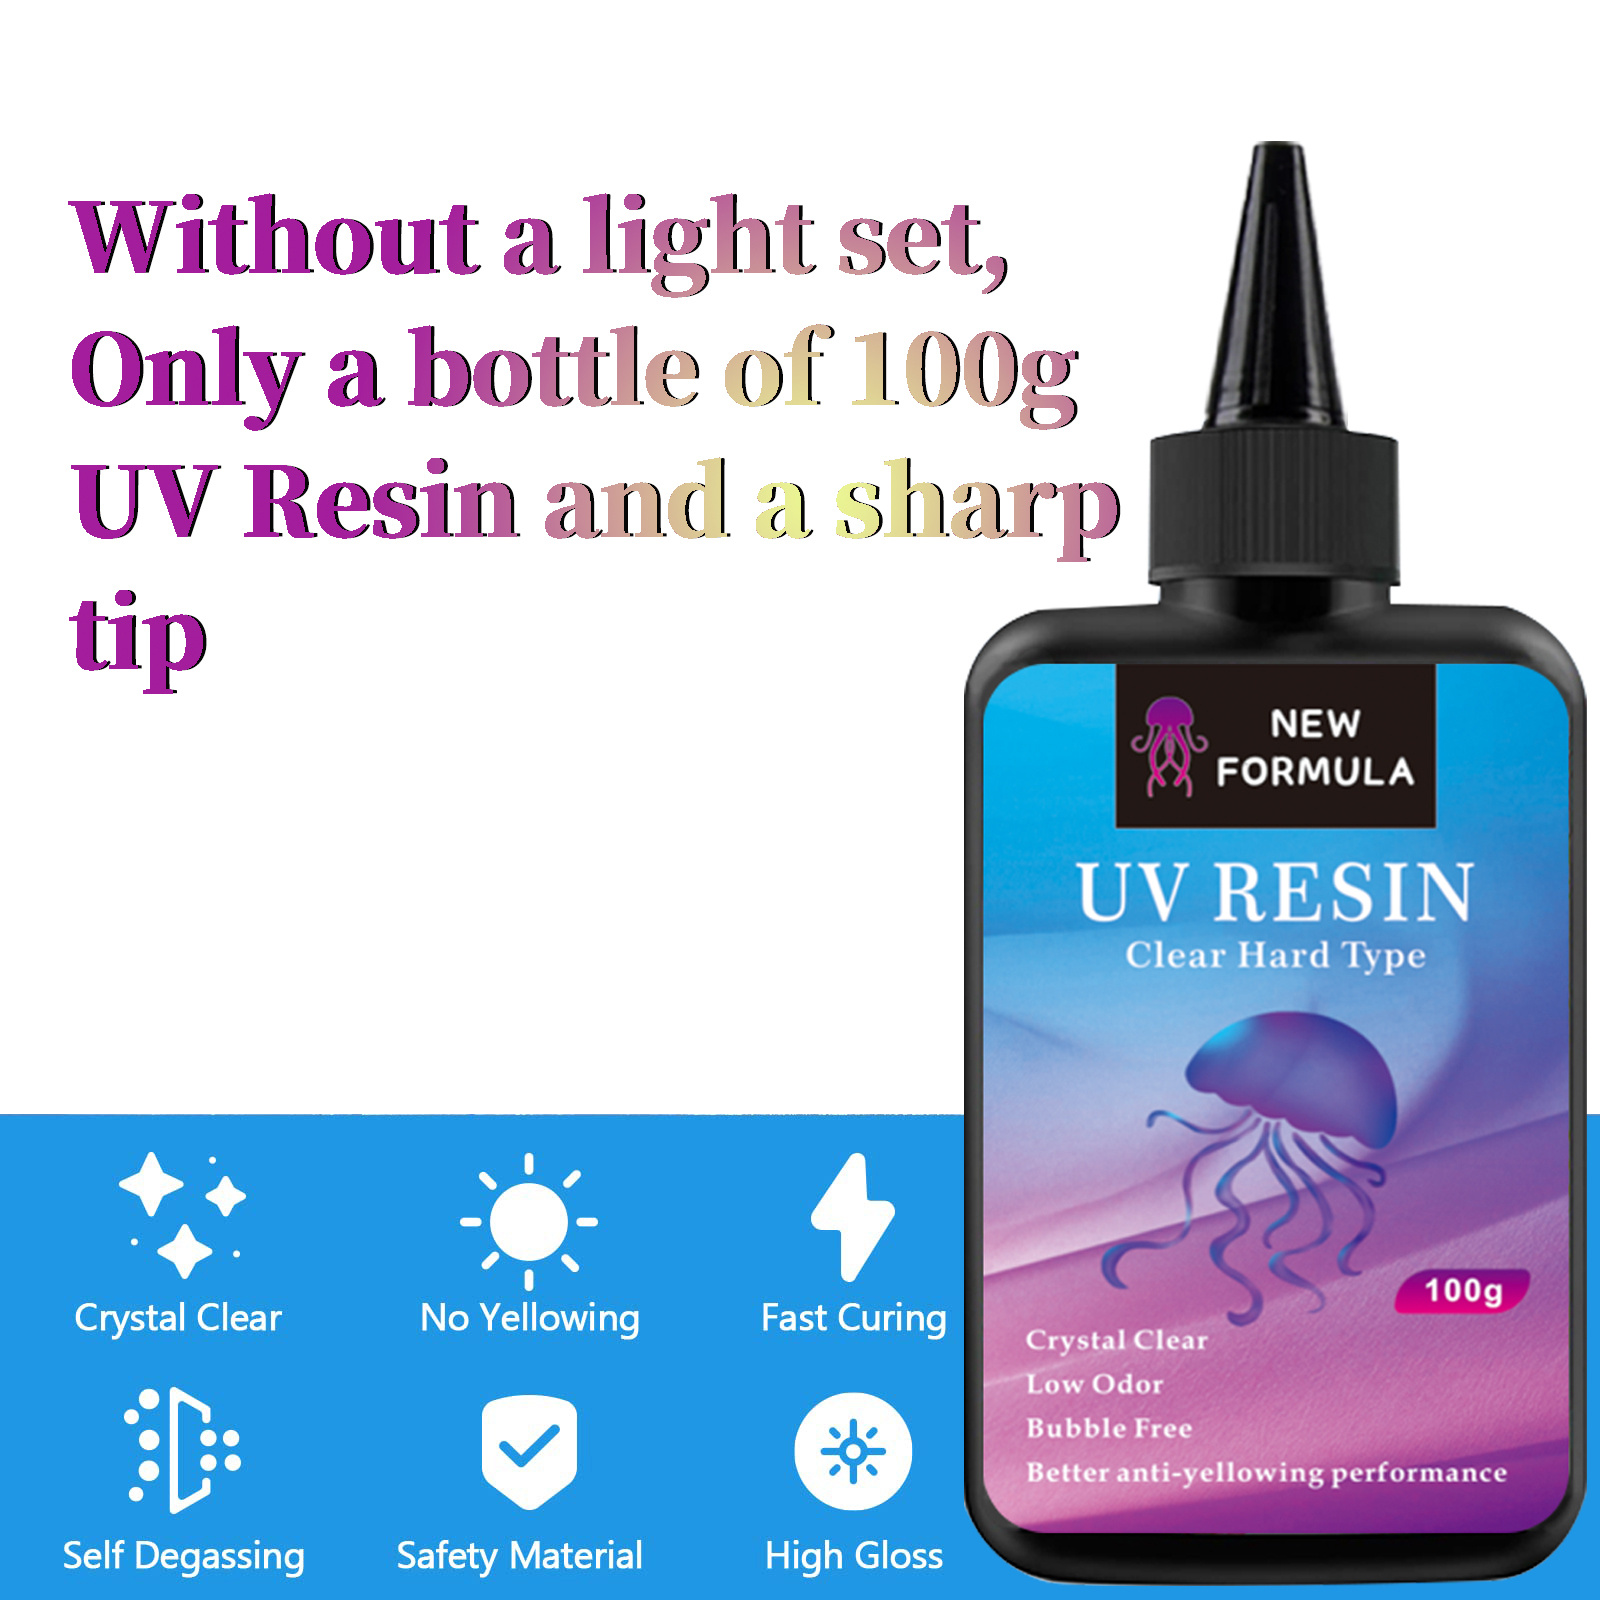 UV Resin Starter Kit 250g Crystal Clear UV Resin & Accessories for